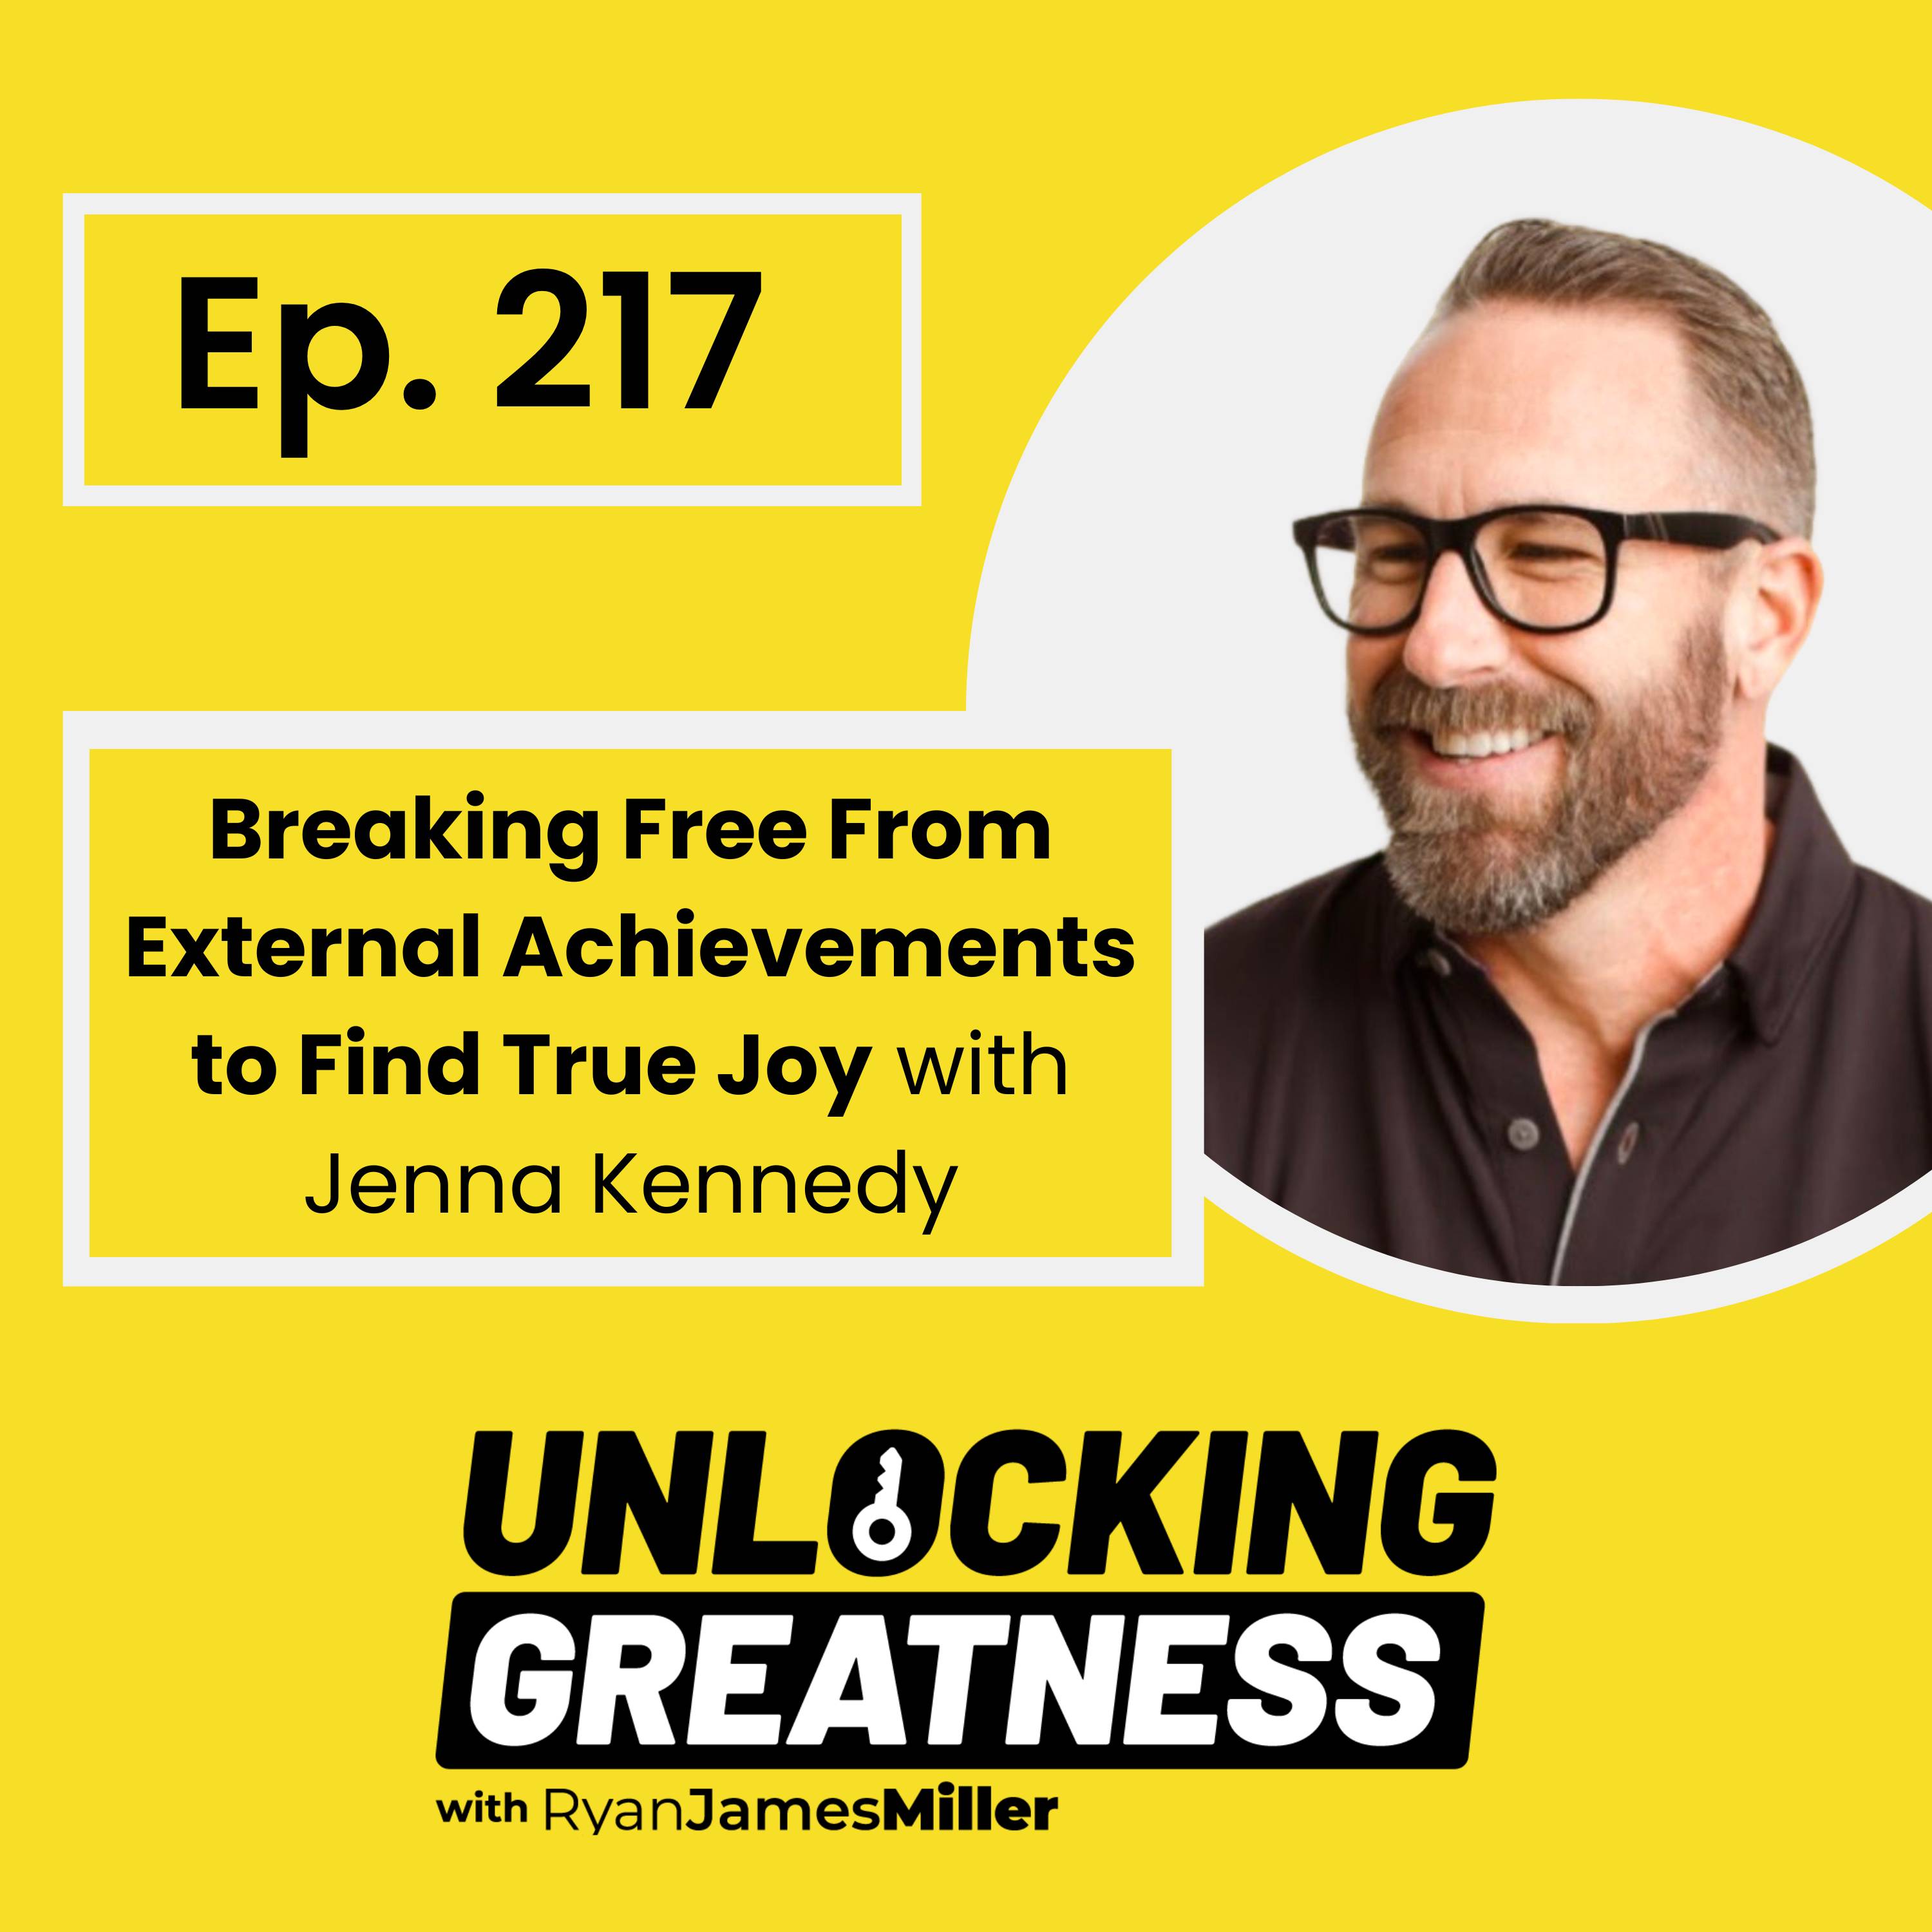 Breaking Free From External Achievements to Find True Joy - Jenna Kennedy